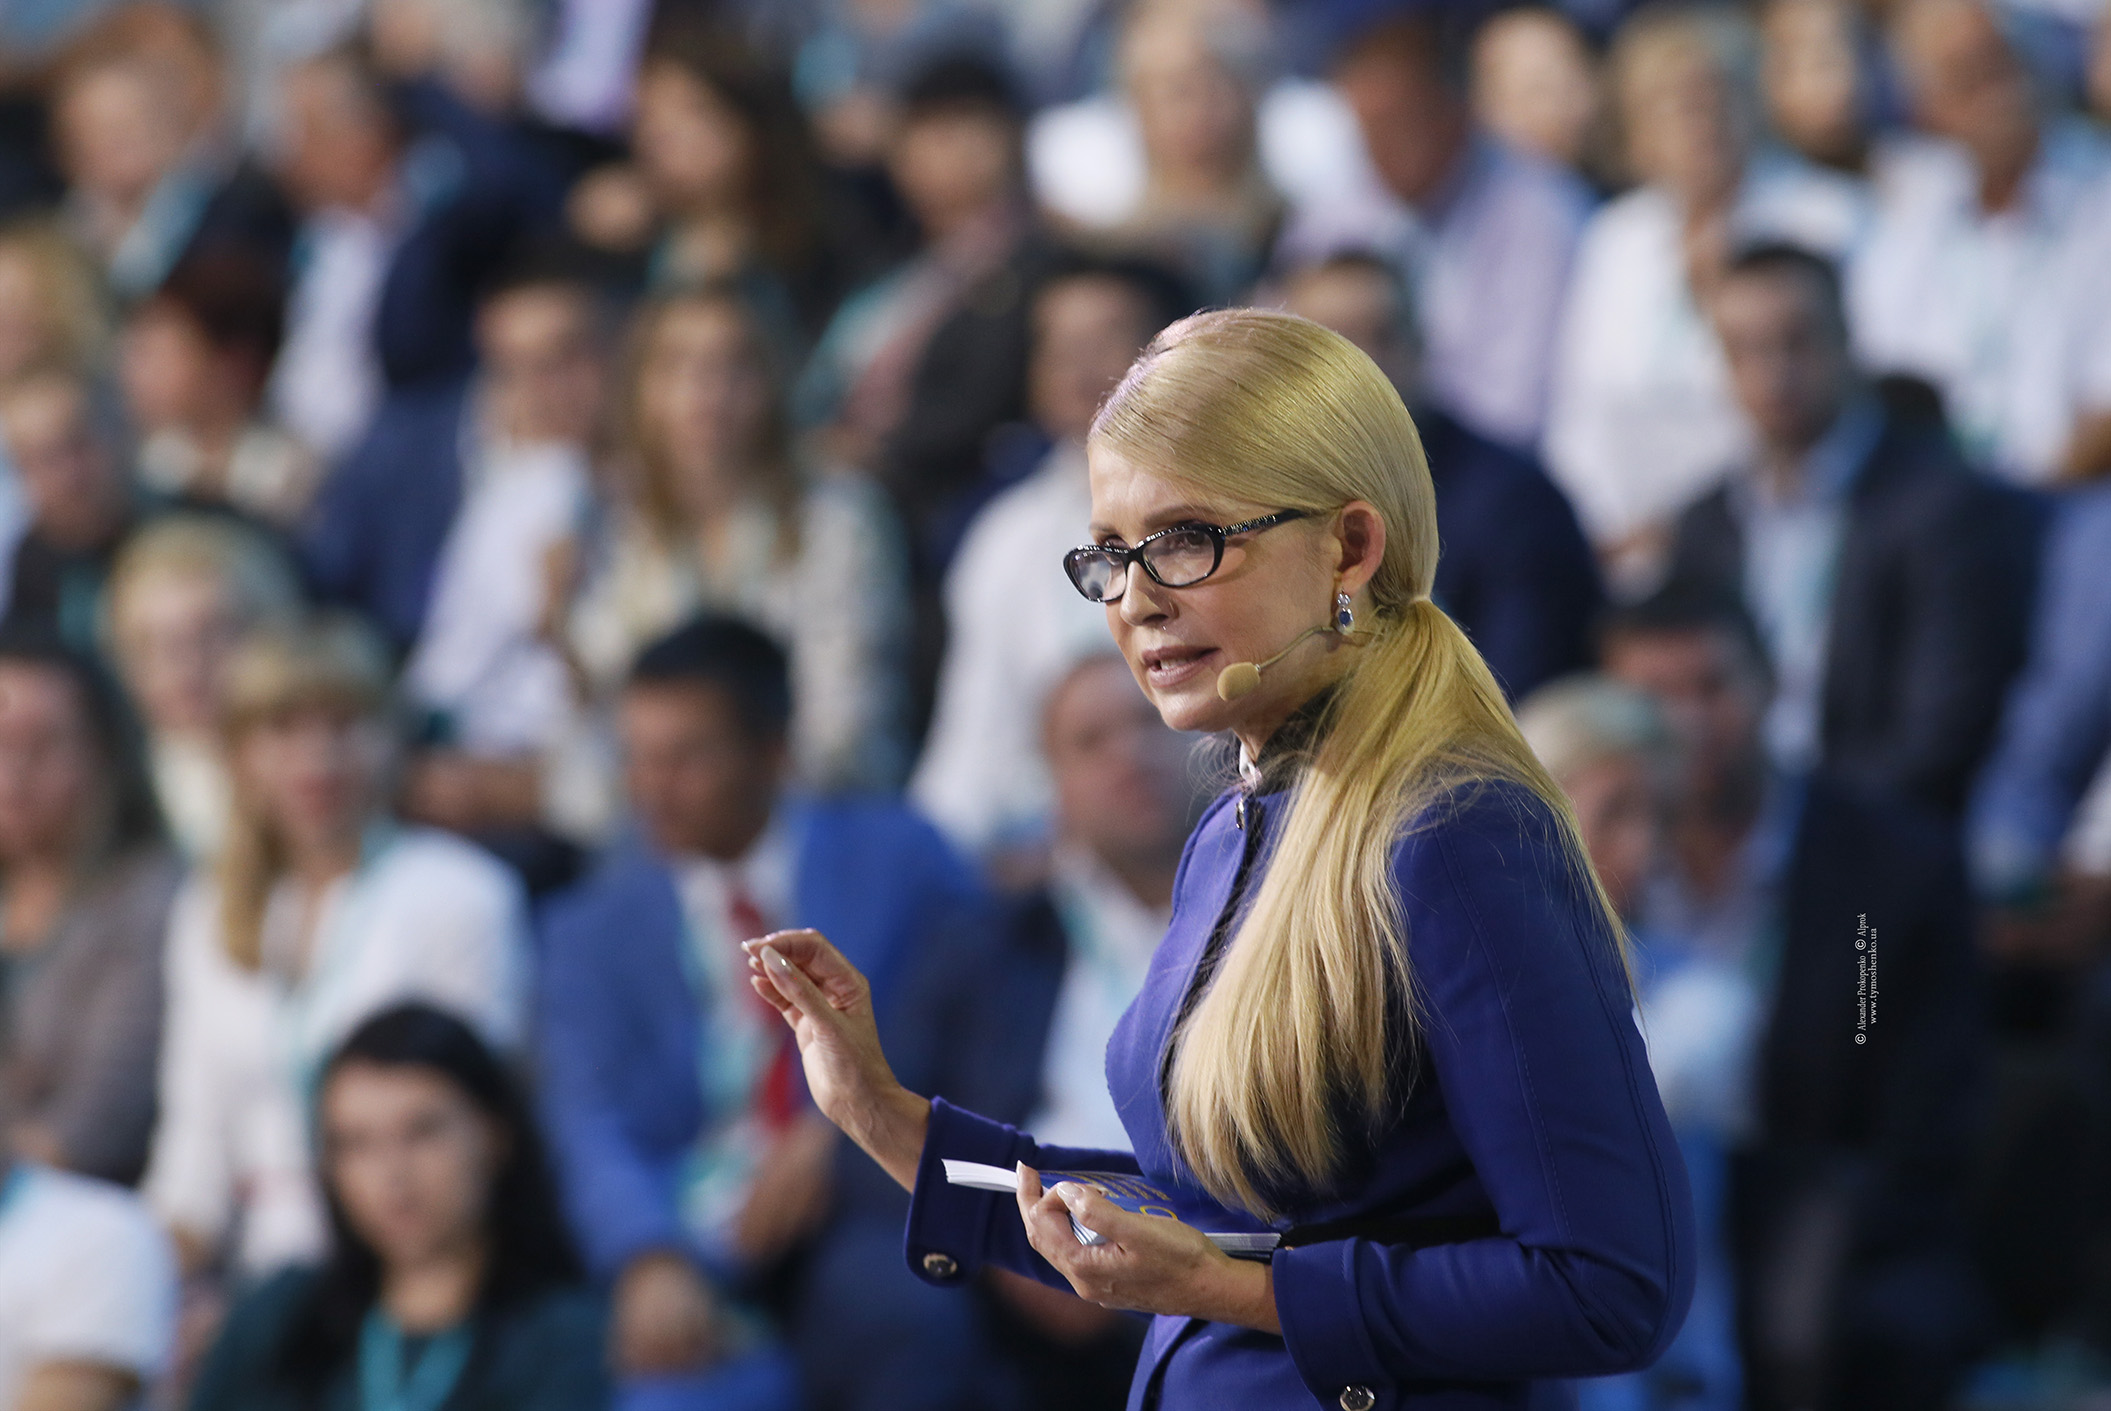 Тимошенко раскрыла многоходовочку Коломойского: дальше нет смысла "врать" - кадры